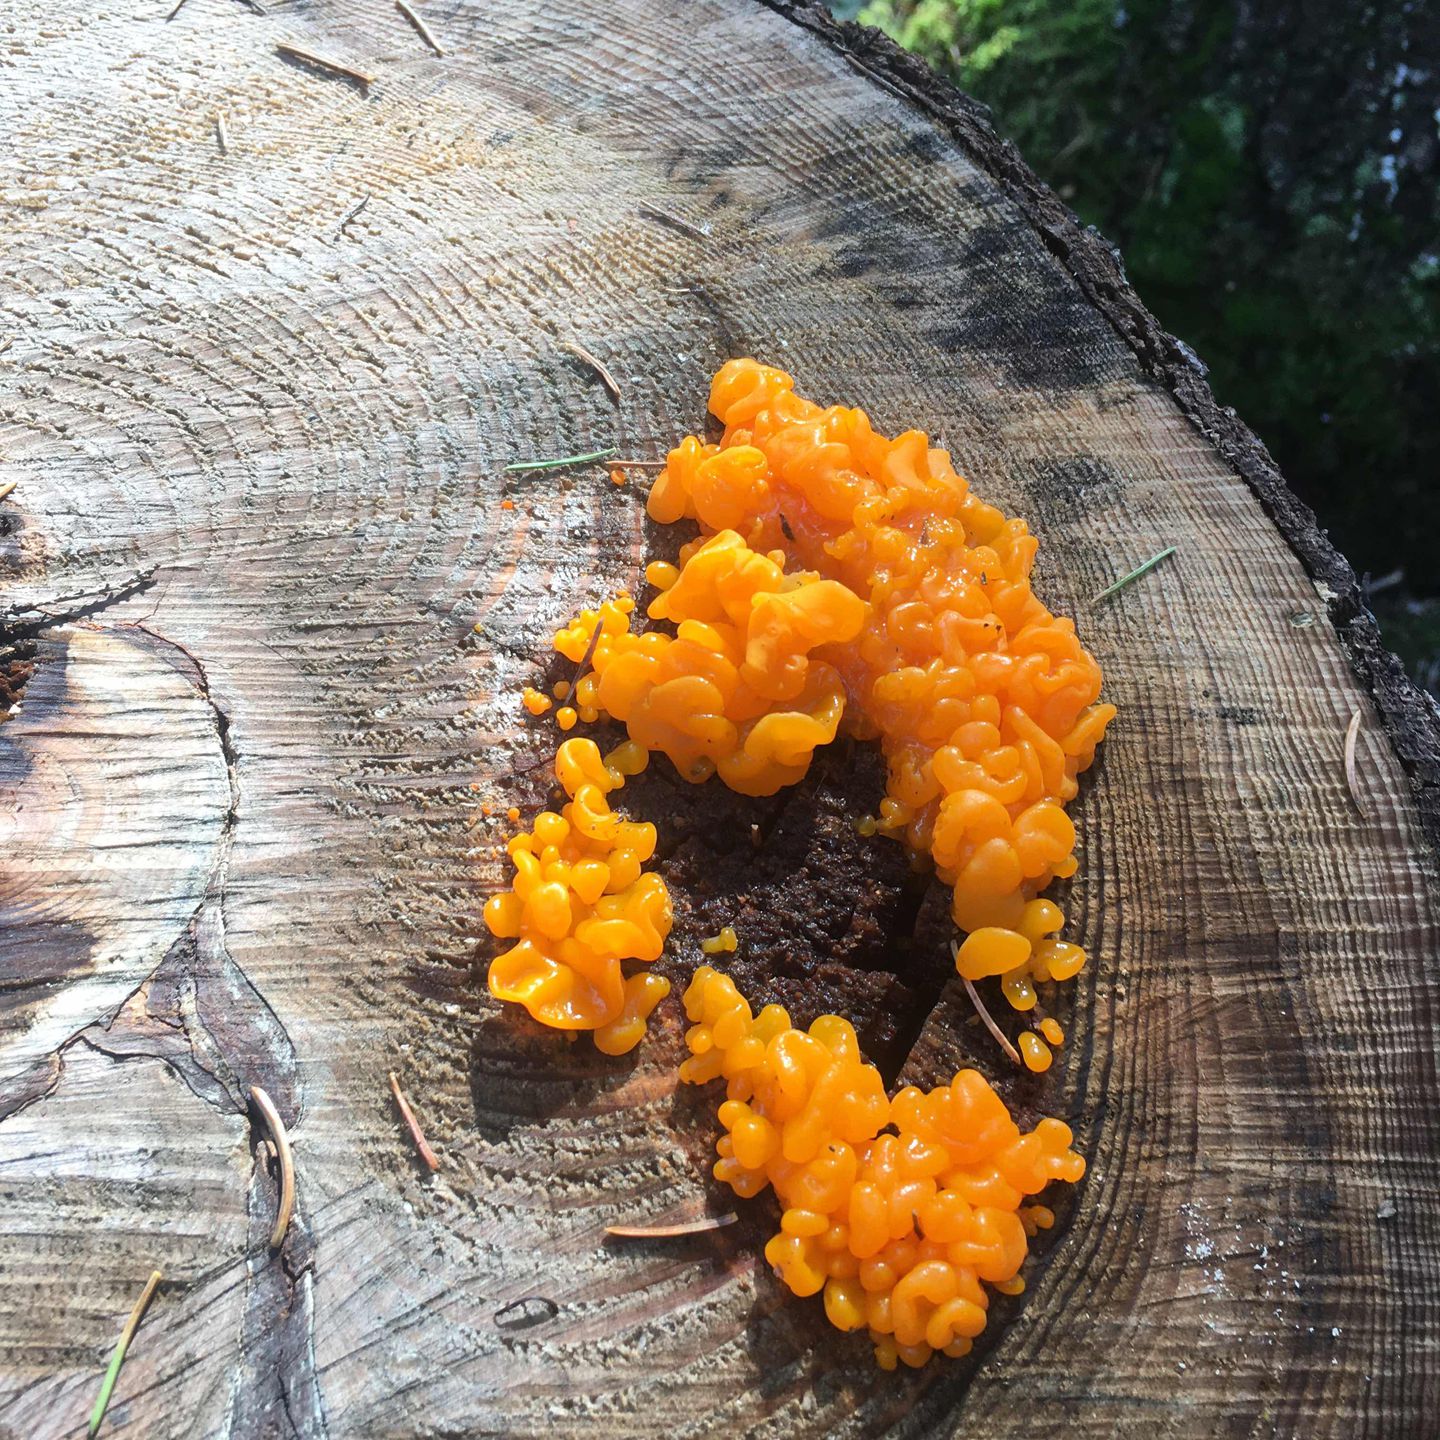 Дрожалка оранжевая - уникальный лечебный гриб